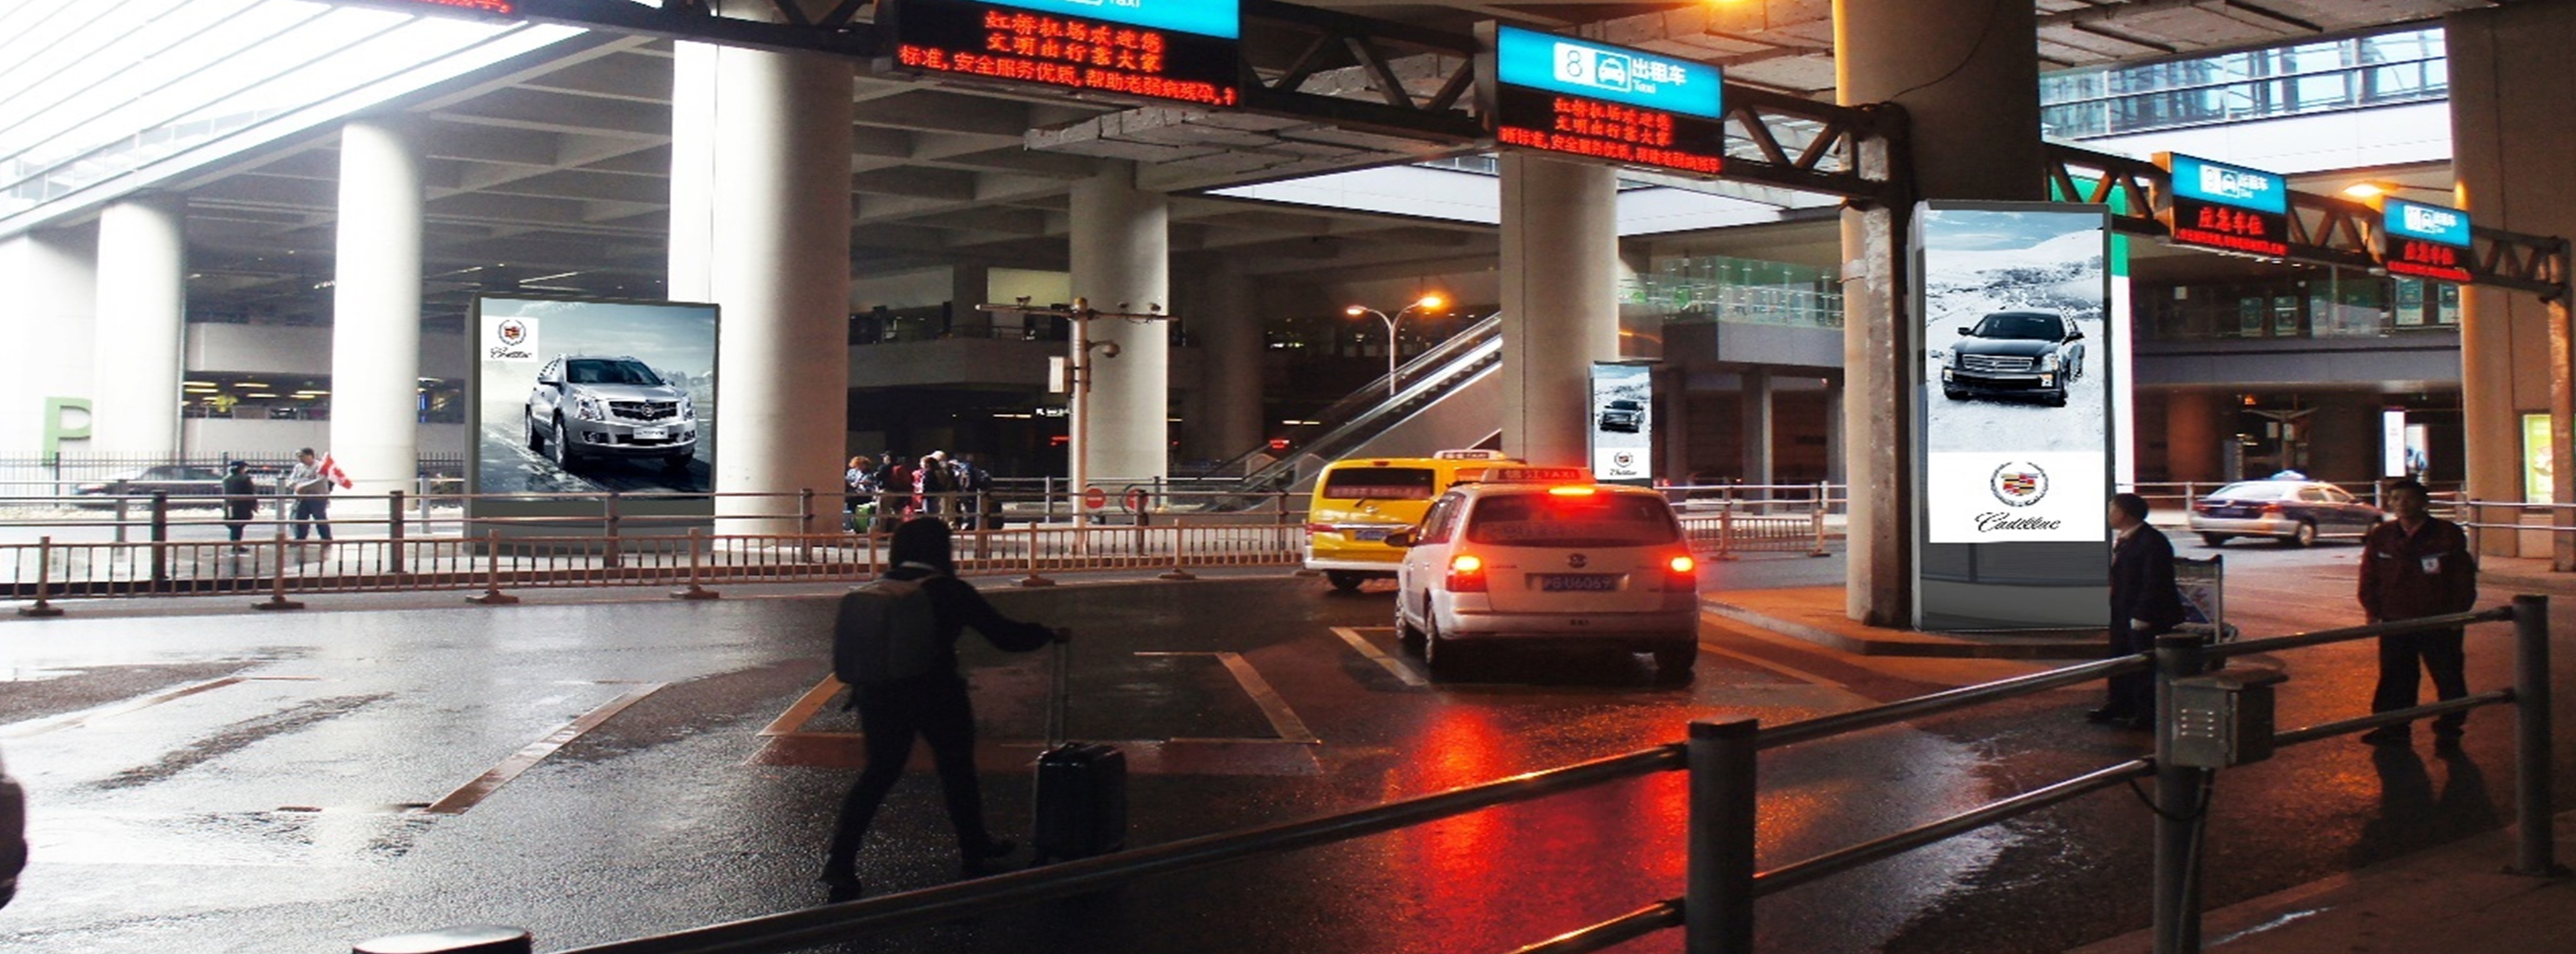 上海机场广告-虹桥T2到达出租车等候区LED屏